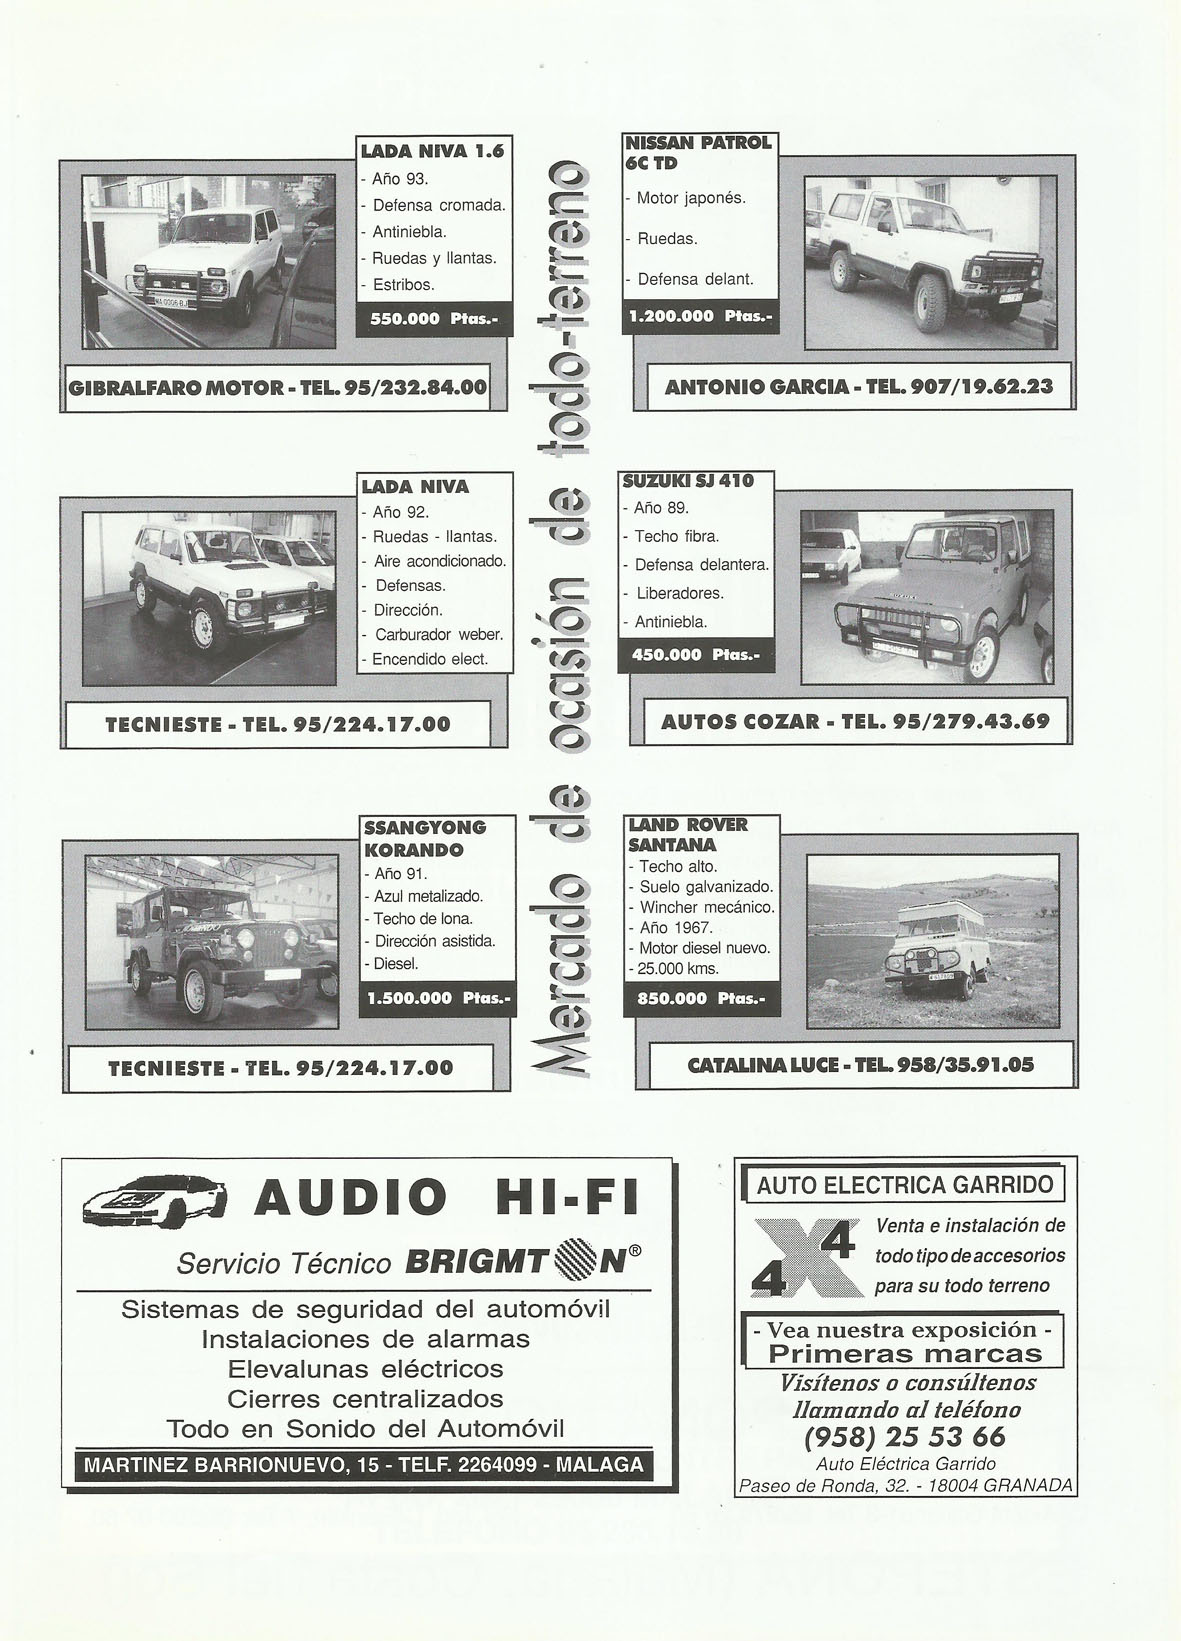 Revista Local 4x4 32 22 Mercado de Ocasión 4x4 y Publicidad Audio HiFi y Auto Eléctrica Garrido